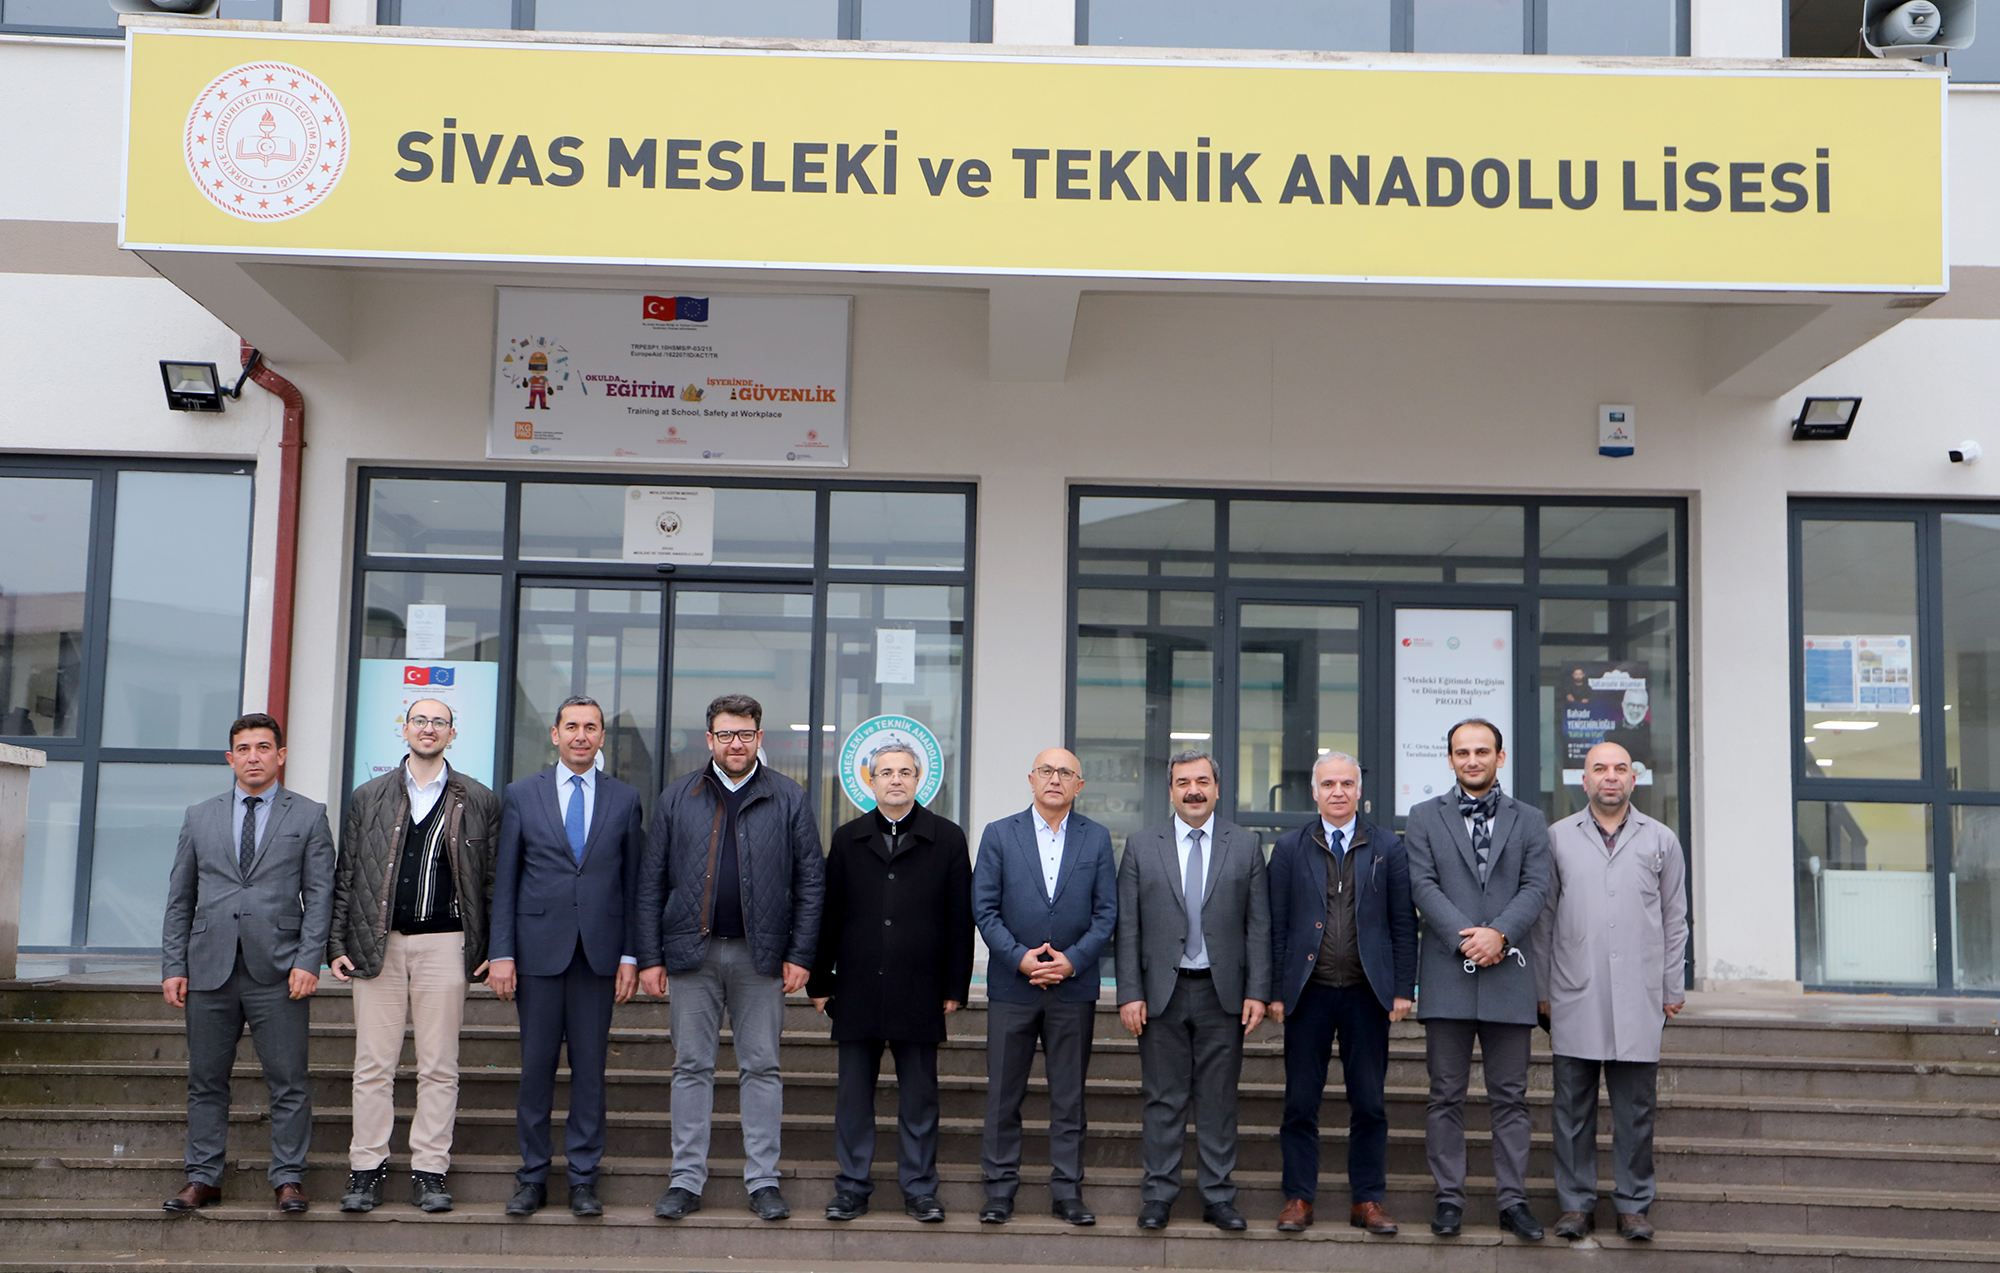 SBTÜ Rektörü Prof. Dr. Mehmet Kul ve Beraberindeki Heyet Sivas Mesleki ve Teknik Anadolu Lisesini Ziyaret Etti